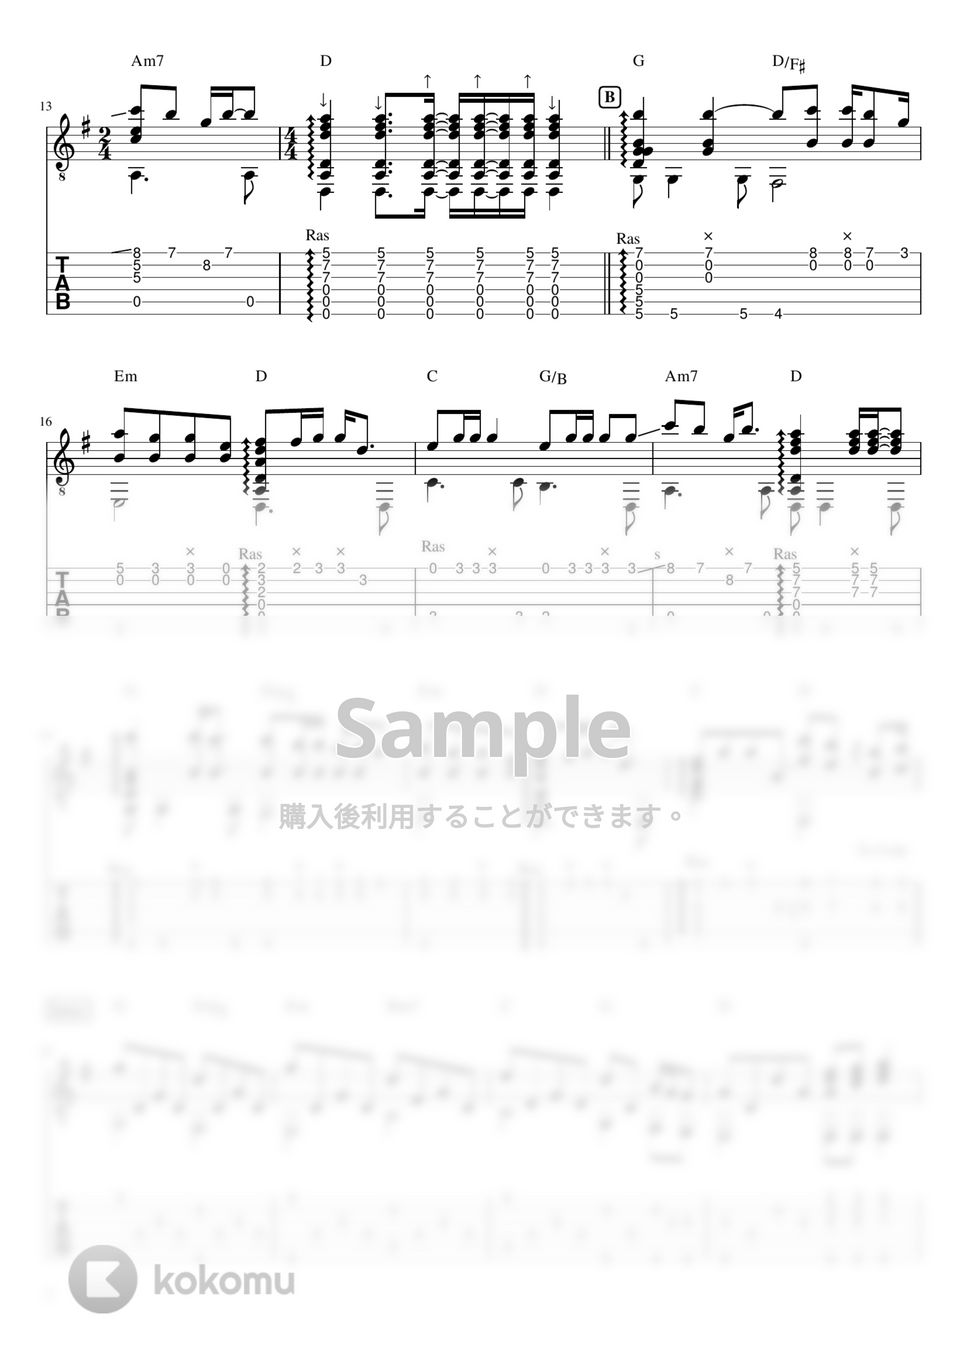 アリス - 遠くで汽笛を聞きながら (ソロギターTAB譜) by 仲内拓磨